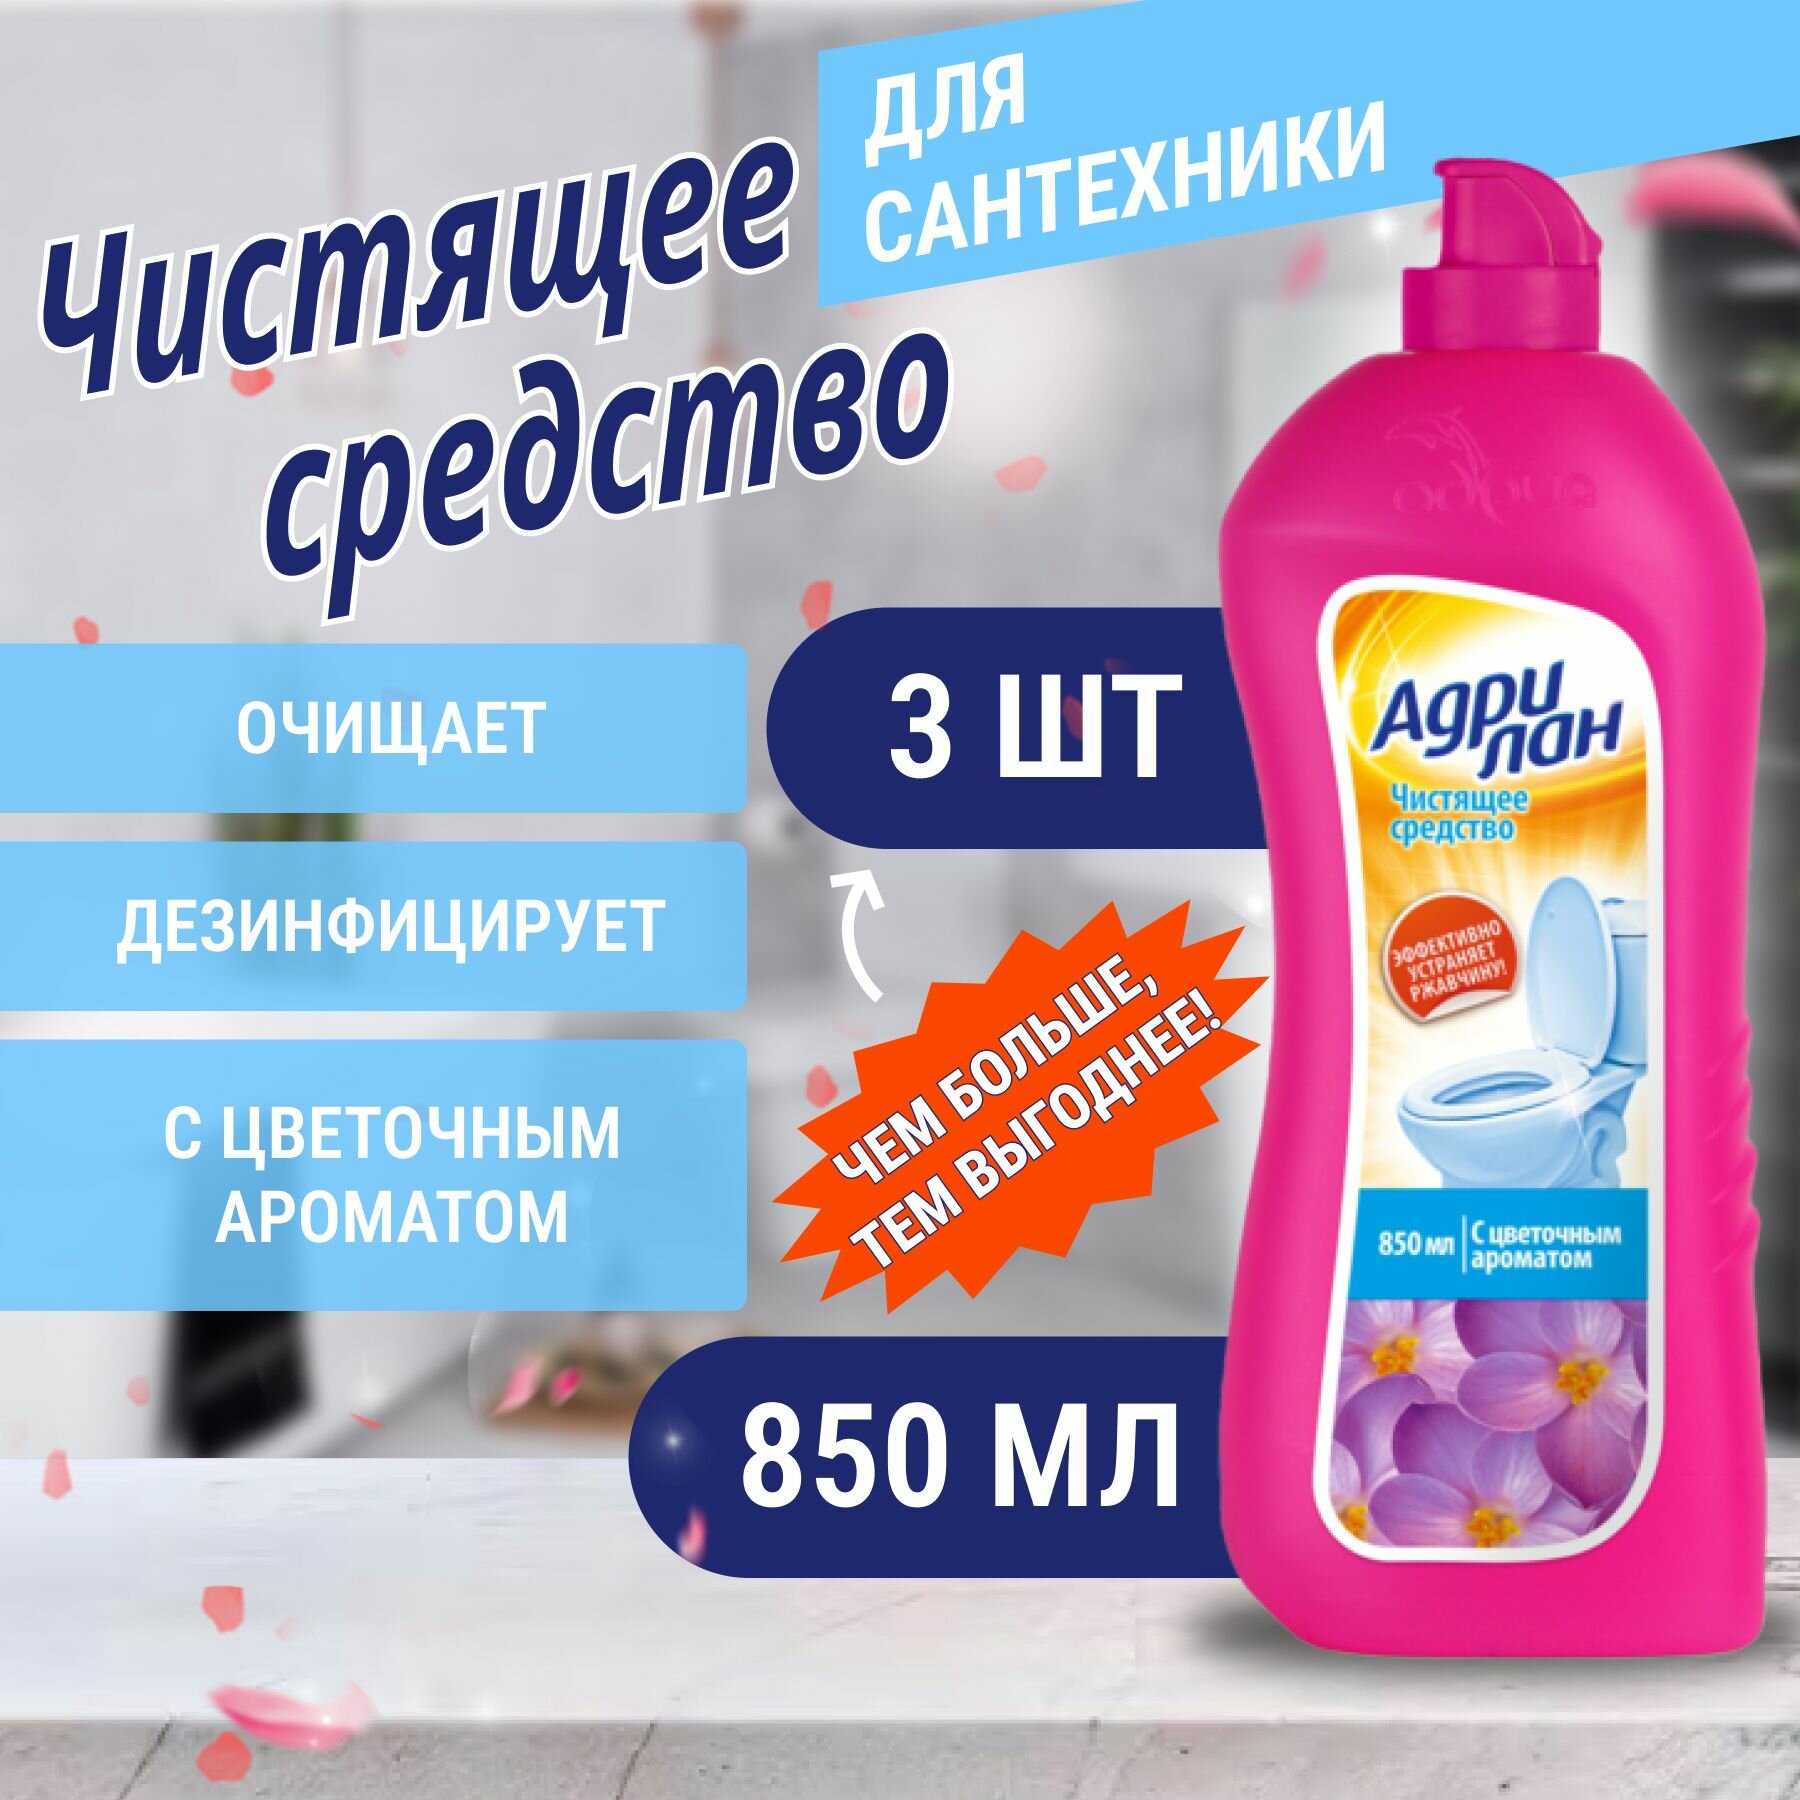 Чистящее средство для туалета с цветочным ароматом, Адрилан 3 шт. по 850 мл. Адрия.